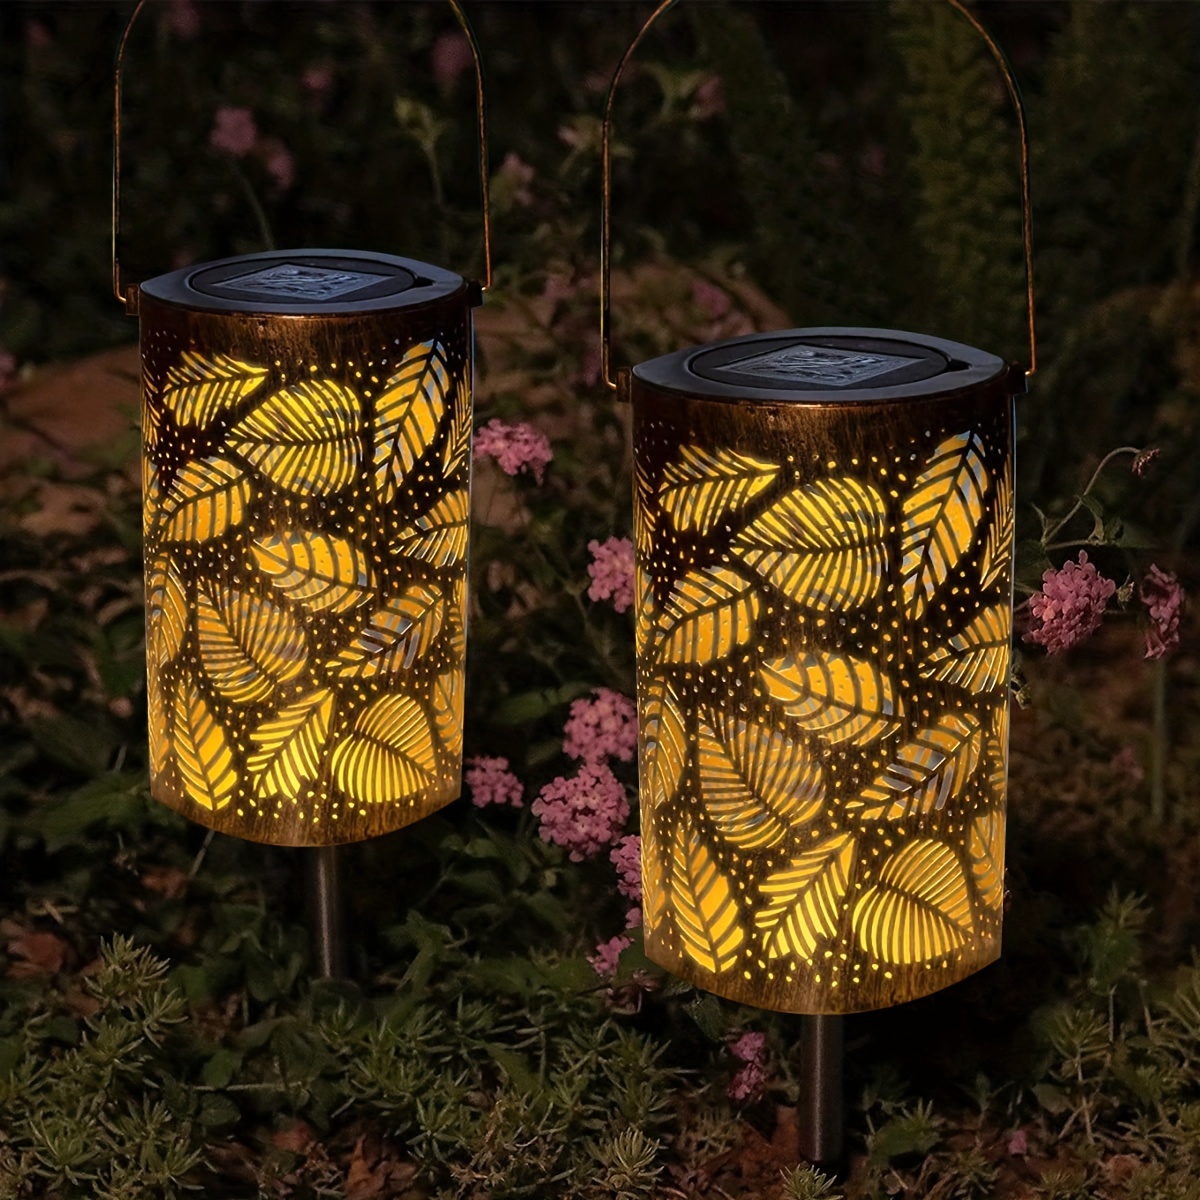 Lampe solaire lampe solaire extérieure Lanterne solaire LED orientale à l' extérieur, effet lumineux fleur de vie, 1x LED blanc chaud, DxH 20x29 cm,  terrasse jardin